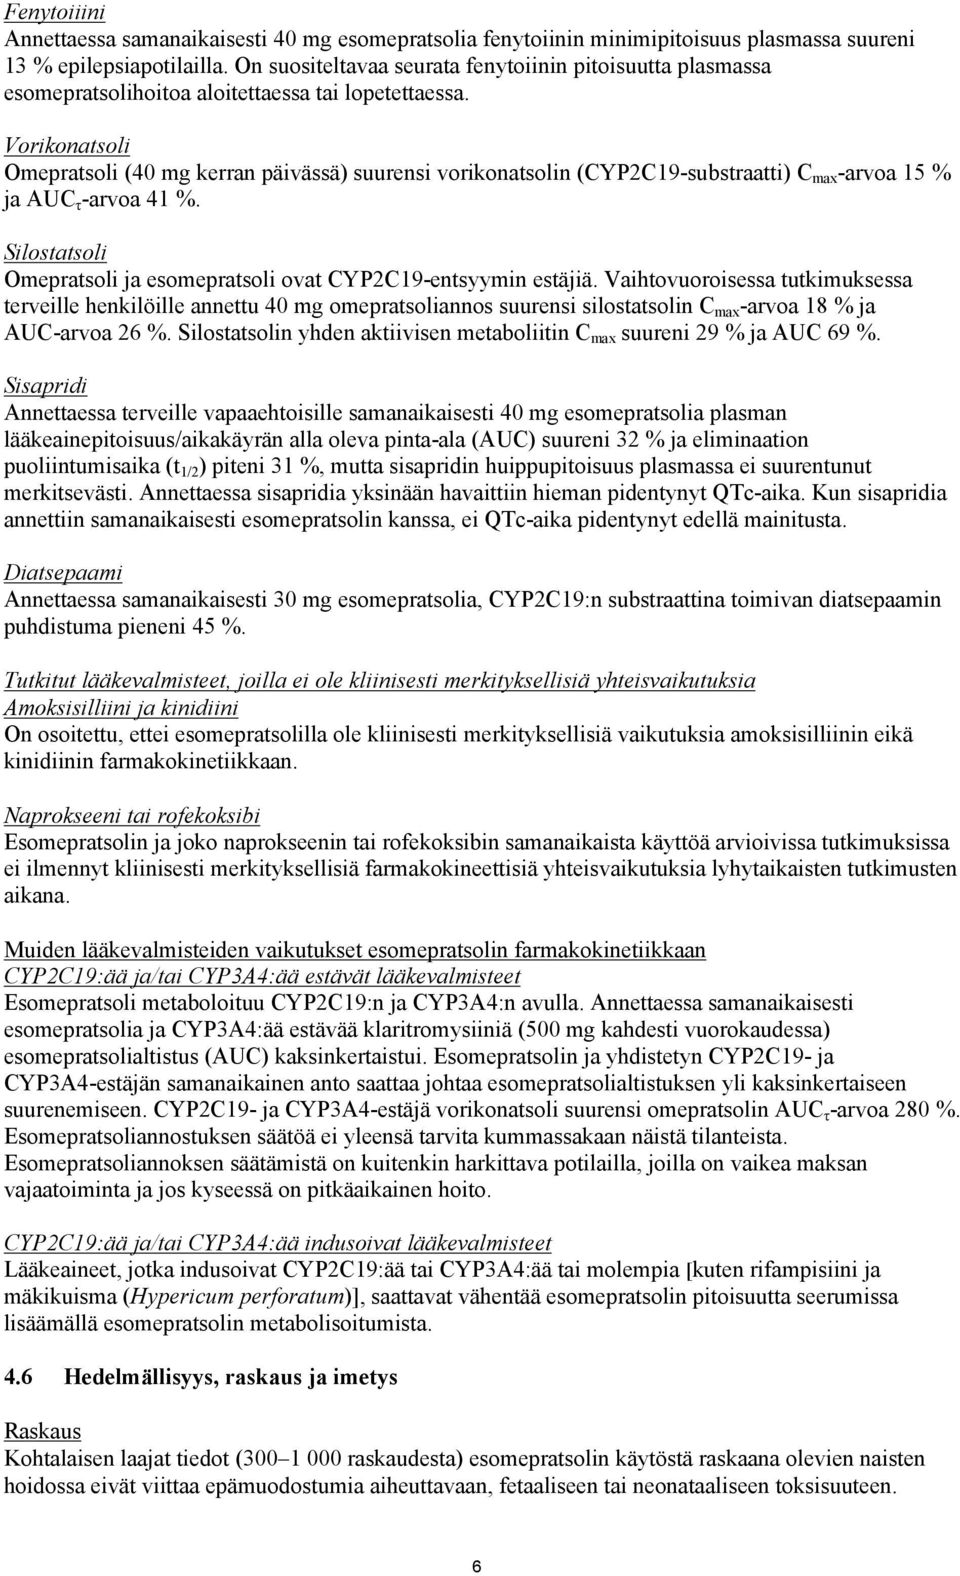 Vorikonatsoli Omepratsoli (40 mg kerran päivässä) suurensi vorikonatsolin (CYP2C19-substraatti) C max -arvoa 15 % ja AUC τ -arvoa 41 %.